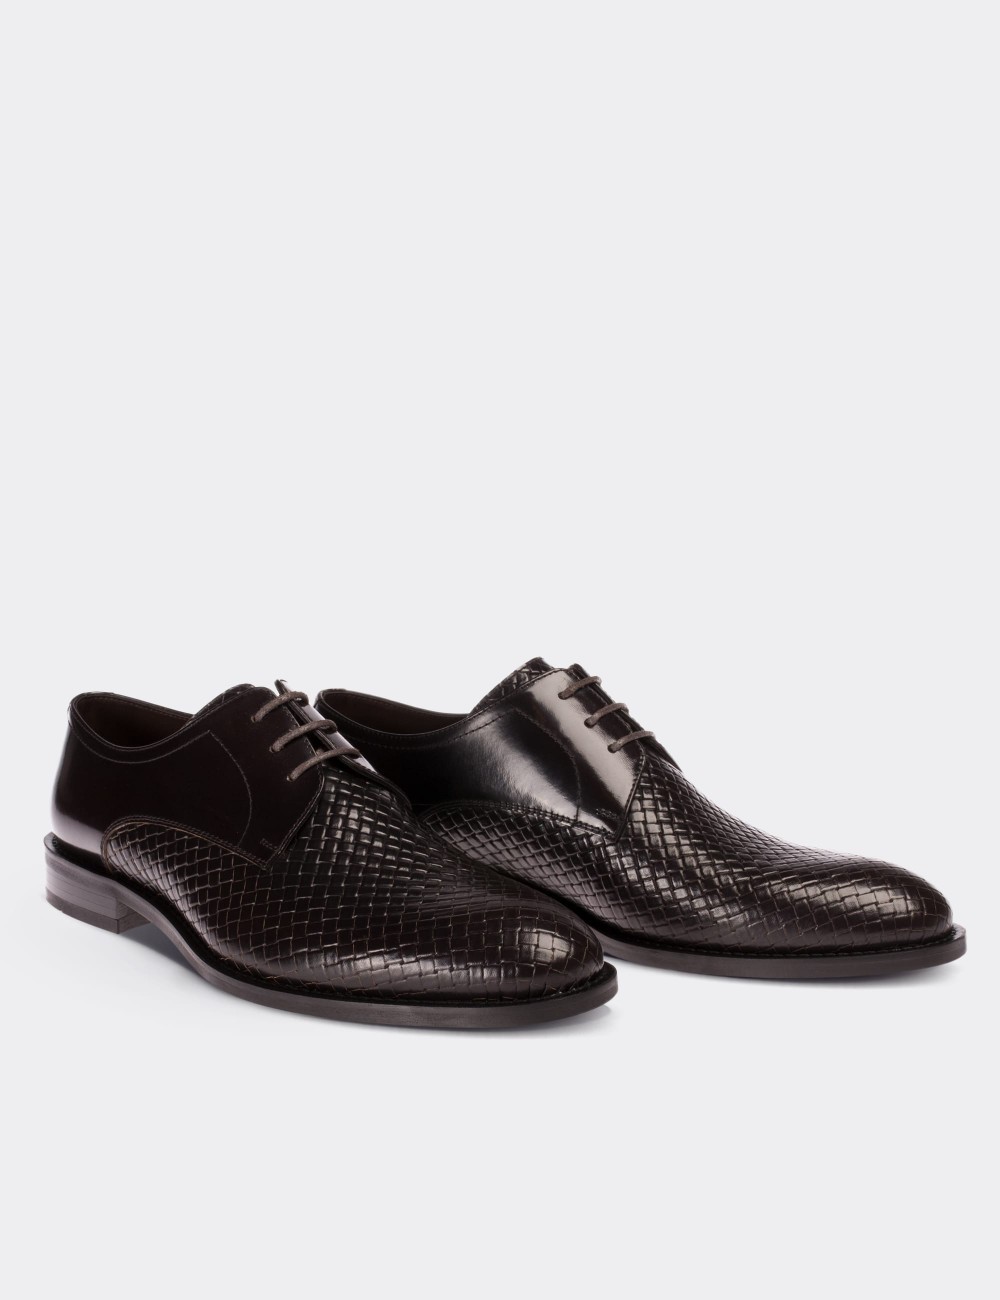 Hakiki Deri Bordo Klasik Erkek Ayakkabı - 00479MBRDM01